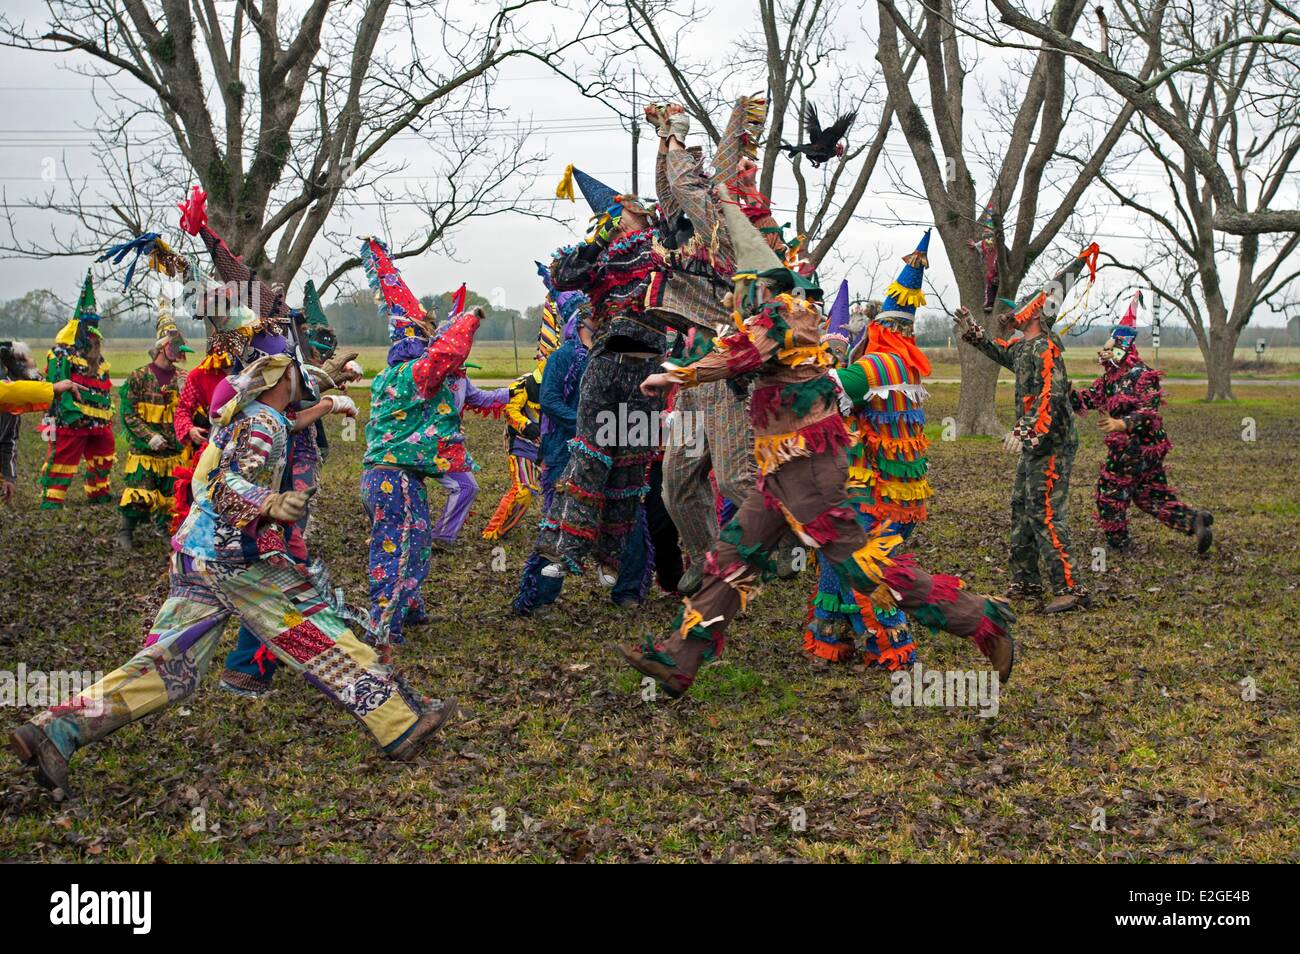 United States Louisiana Iota Courir de Mardi Gras est une tradition cajun qui a lieu chaque année au cours de Mardi-Gras dans cette région de langue française et en costumes colorés hommes cagoulés vont de maison en maison à pied ou à cheval à la mendicité pour l'argent ou des volailles vivantes e Banque D'Images